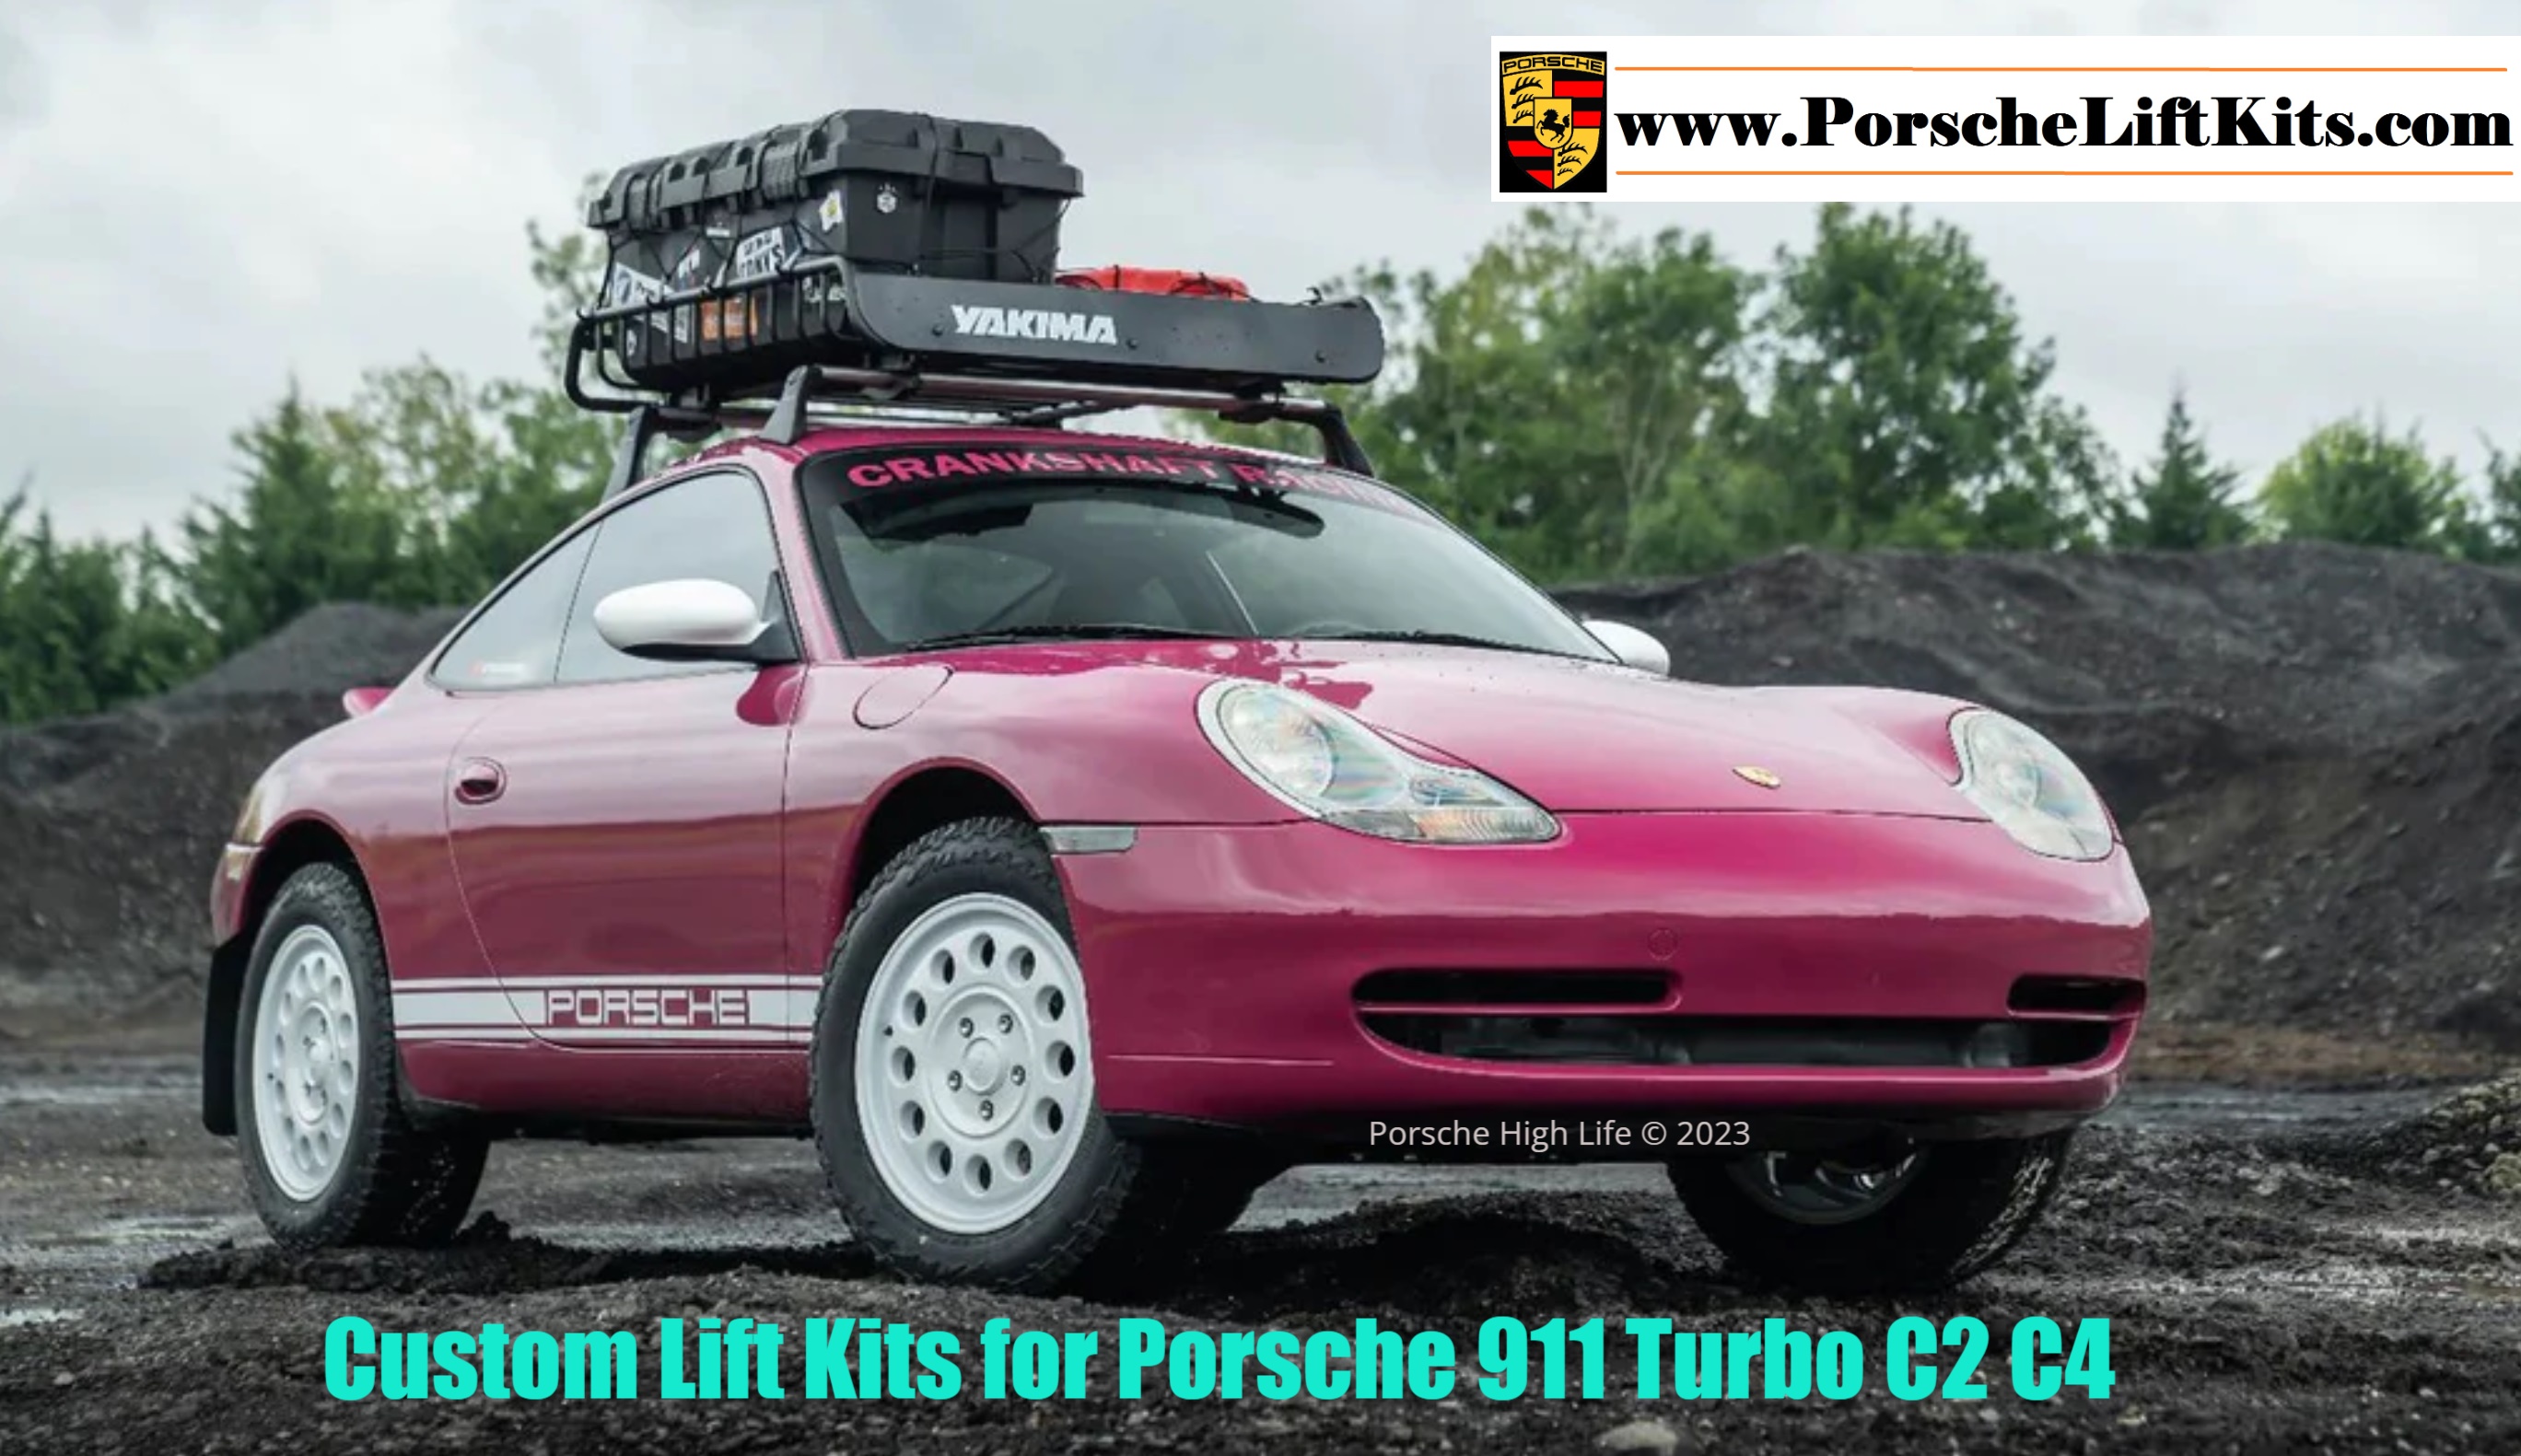 Lift Kits for 1998-2005 Porsche 911 996 Turbo C2 C4